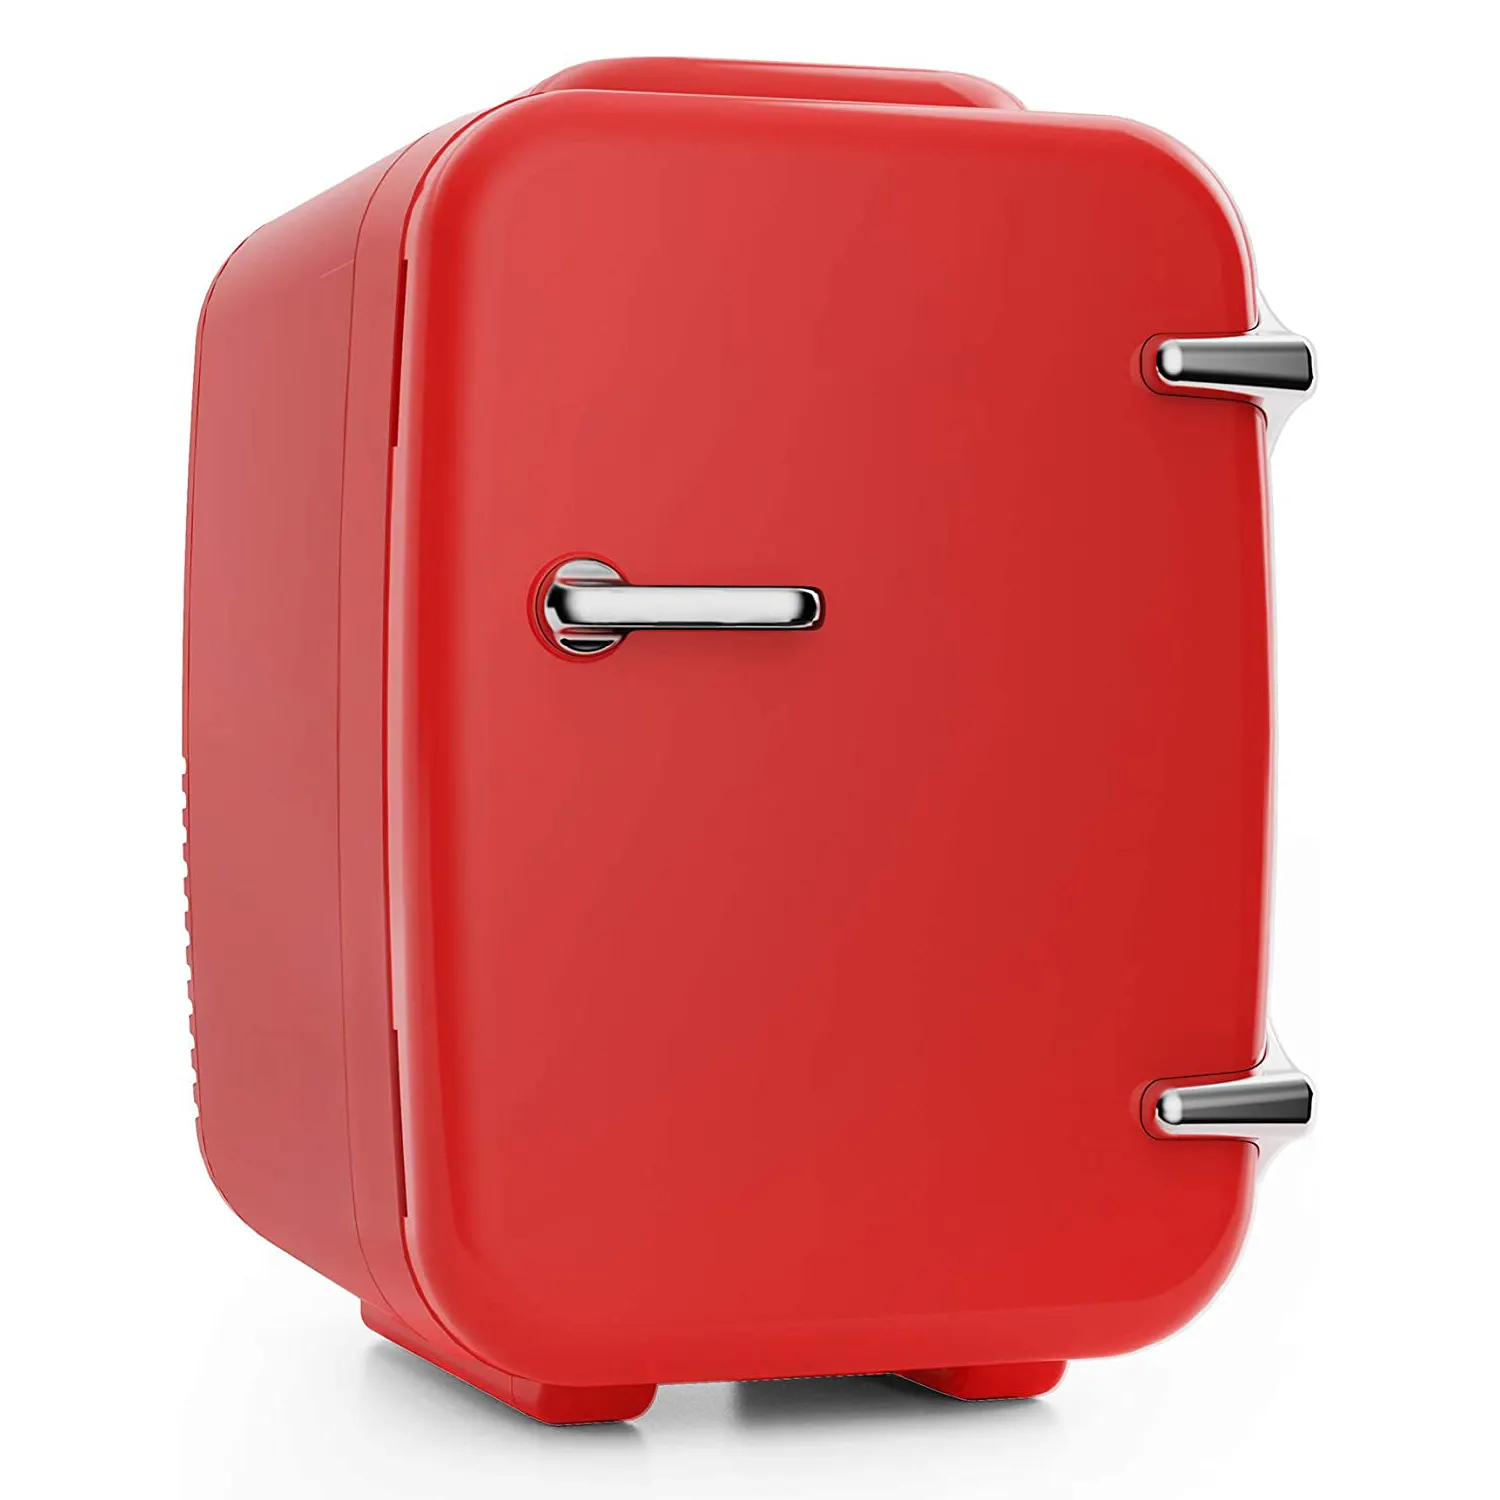 4L clássico venda quente mini geladeira portátil caixa de refrigerador de carro elétrico 12v mini refrigeradores portáteis